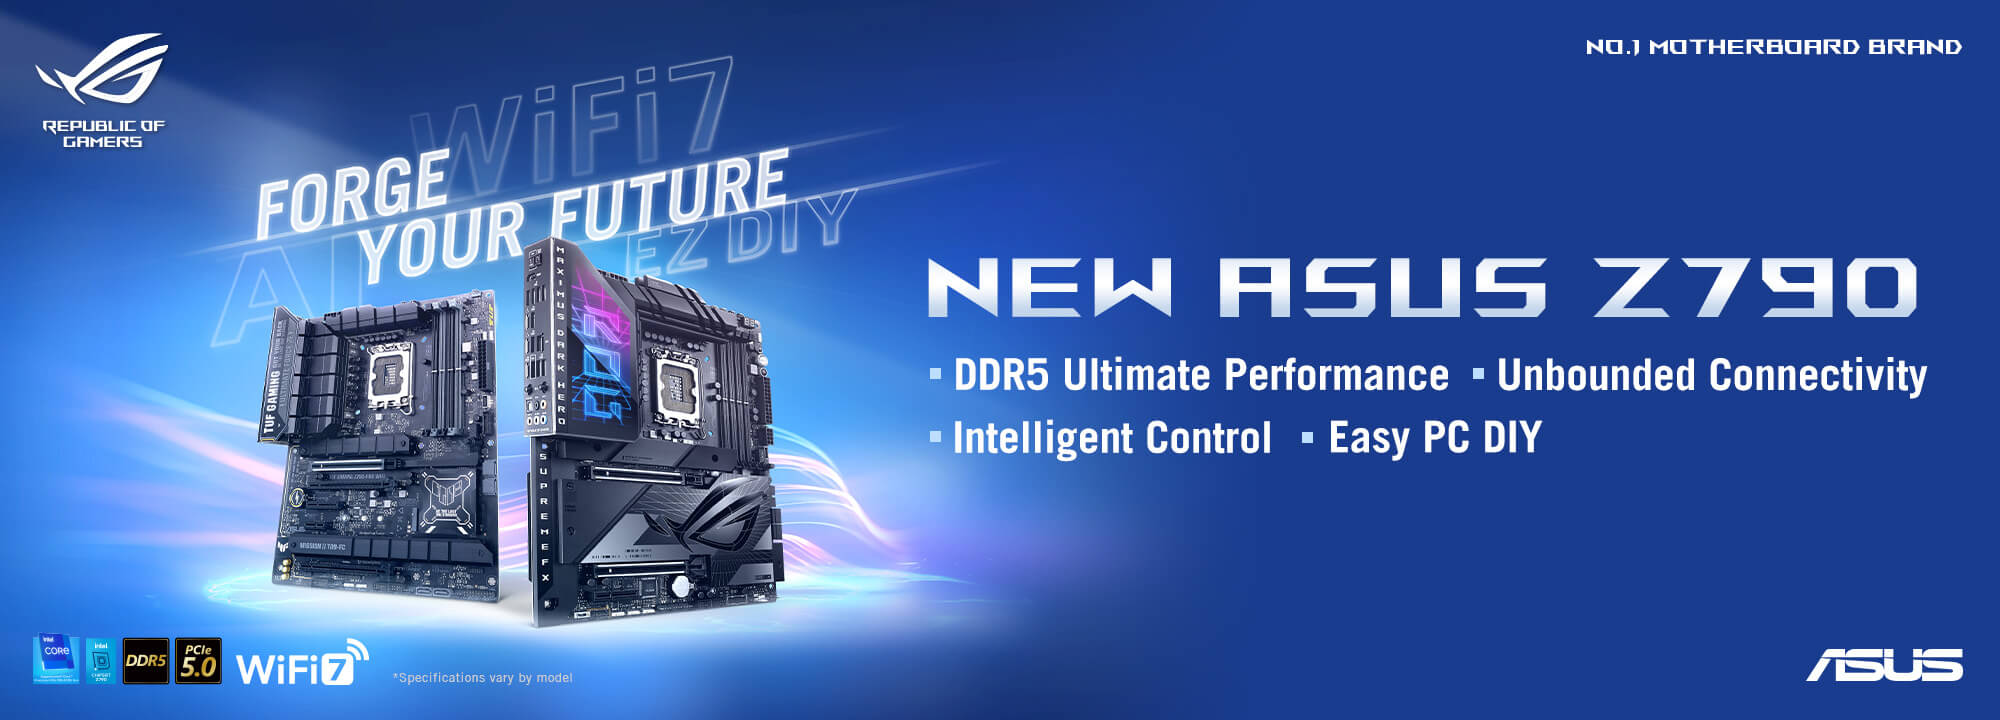 FORGEZ VOTRE AVENIR – NOUVEAUTÉS ASUS Z790, avec Performances ultimes DDR5, Connectivité sans limite, Contrôle intelligent et Montage simplifié.